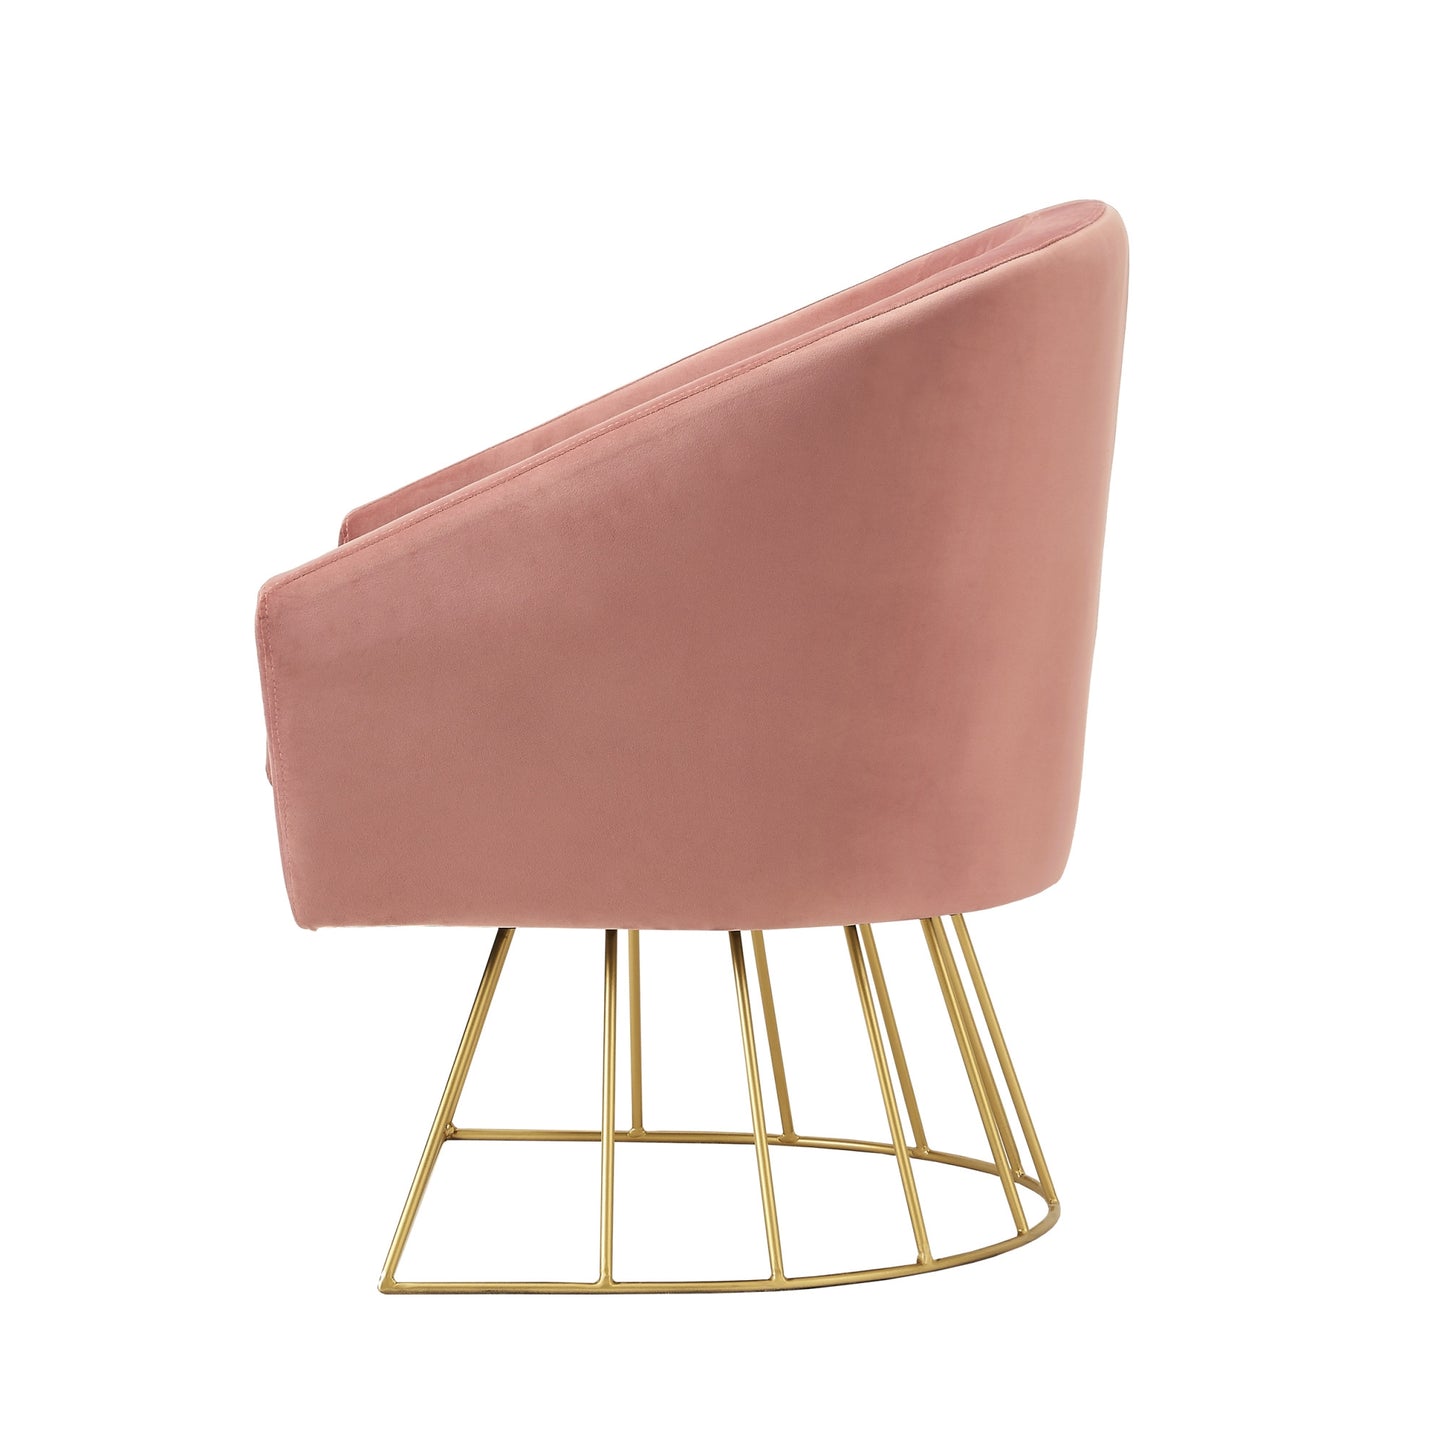 29" Blush And Gold Velvet Barrel Chair